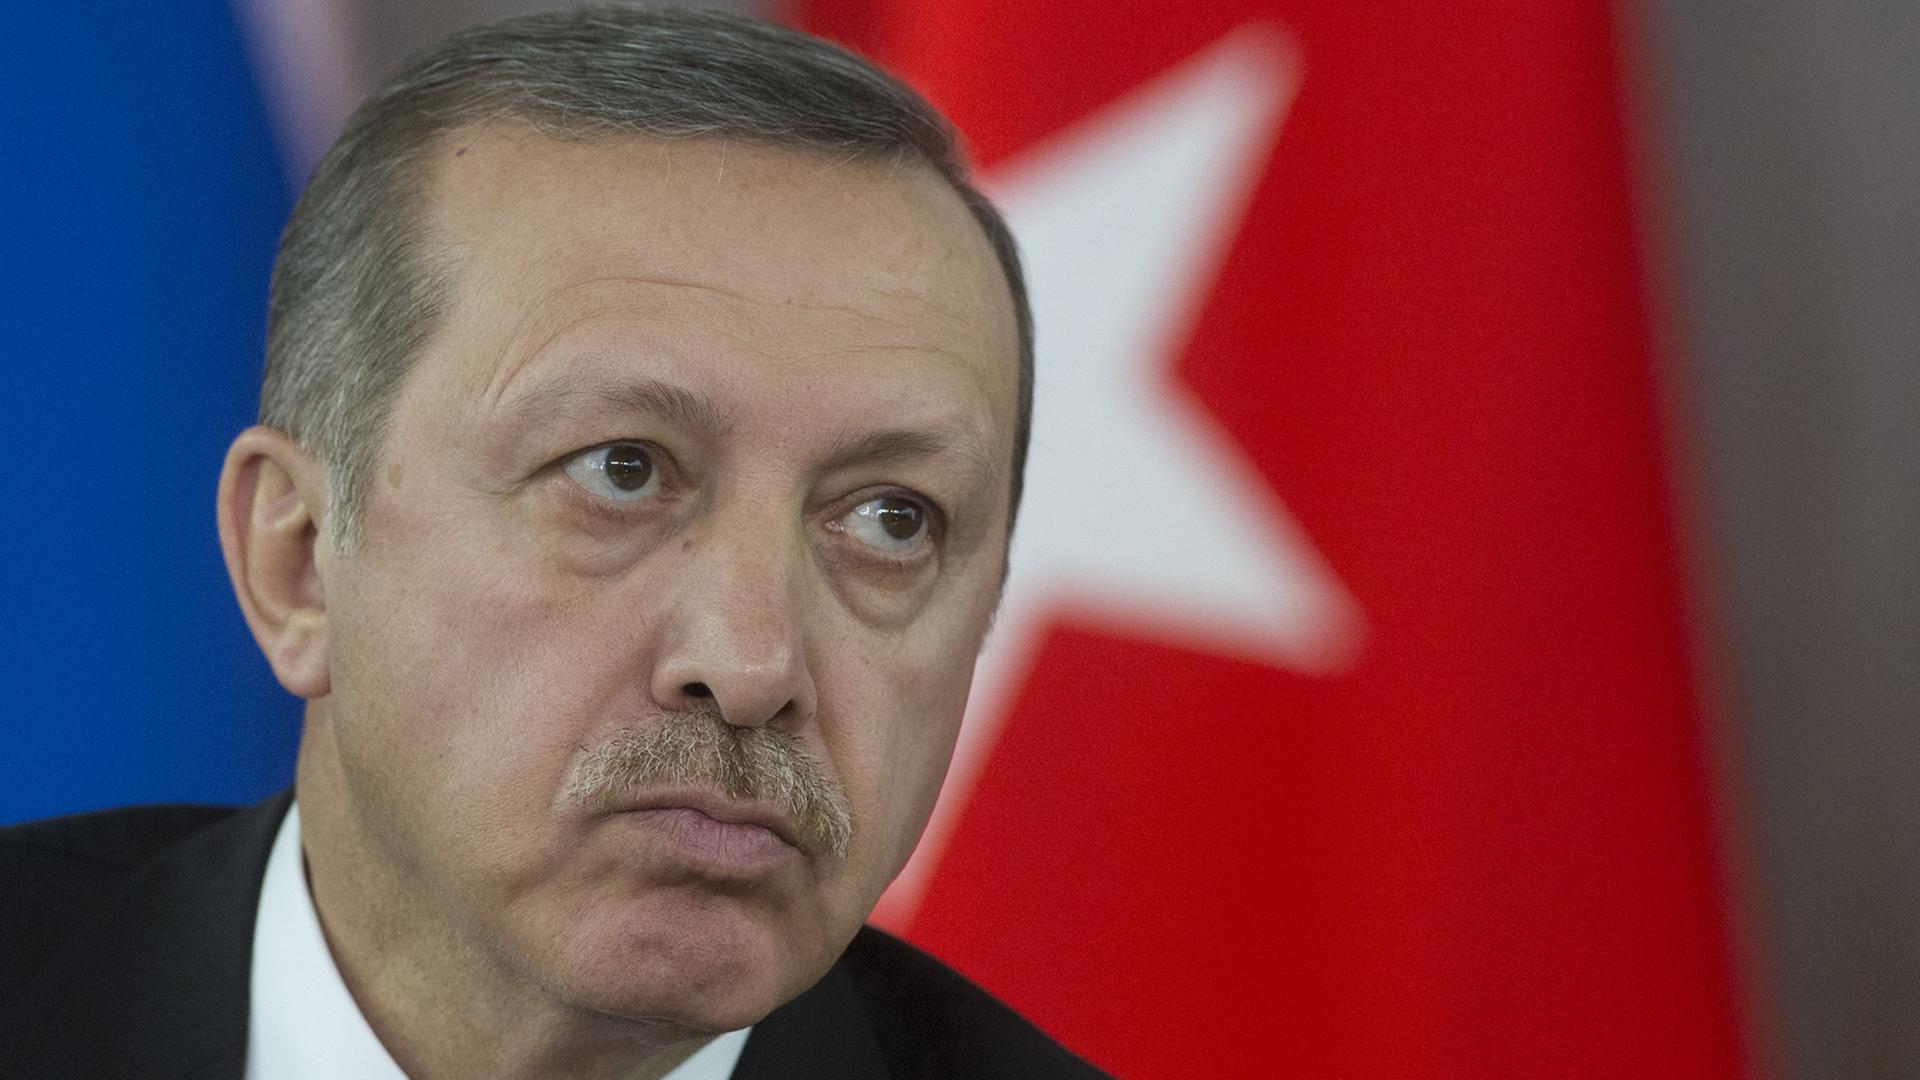 Der türkische Ministerpräsident Recep Tayyip Erdogan vor einer Türkeifahne.